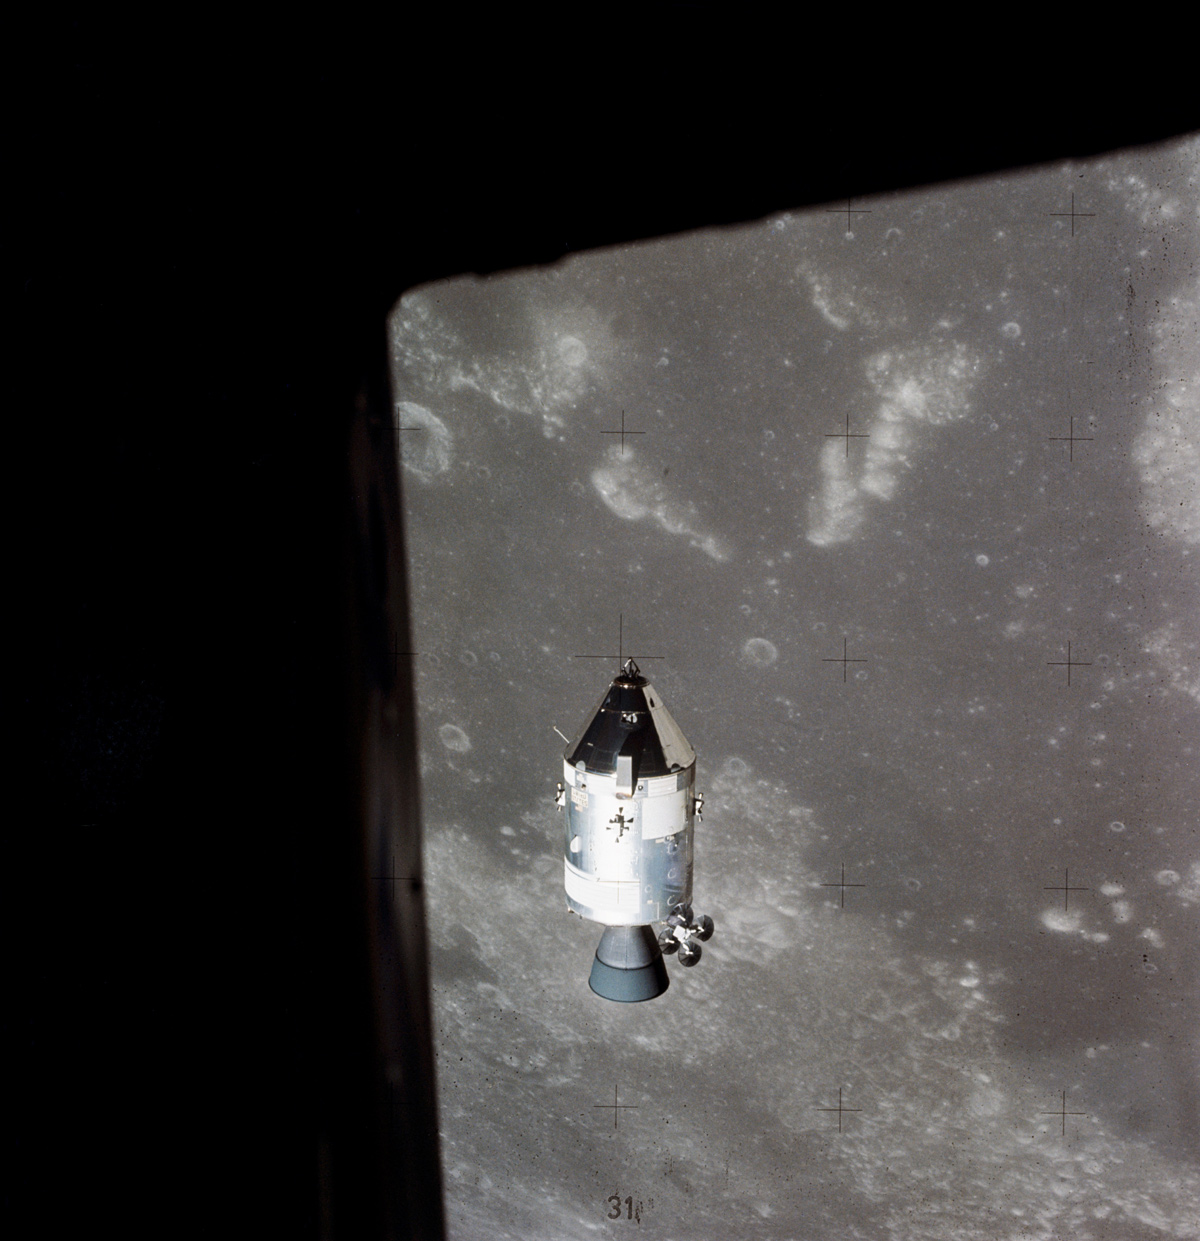 Apollo 15 in lunar orbit